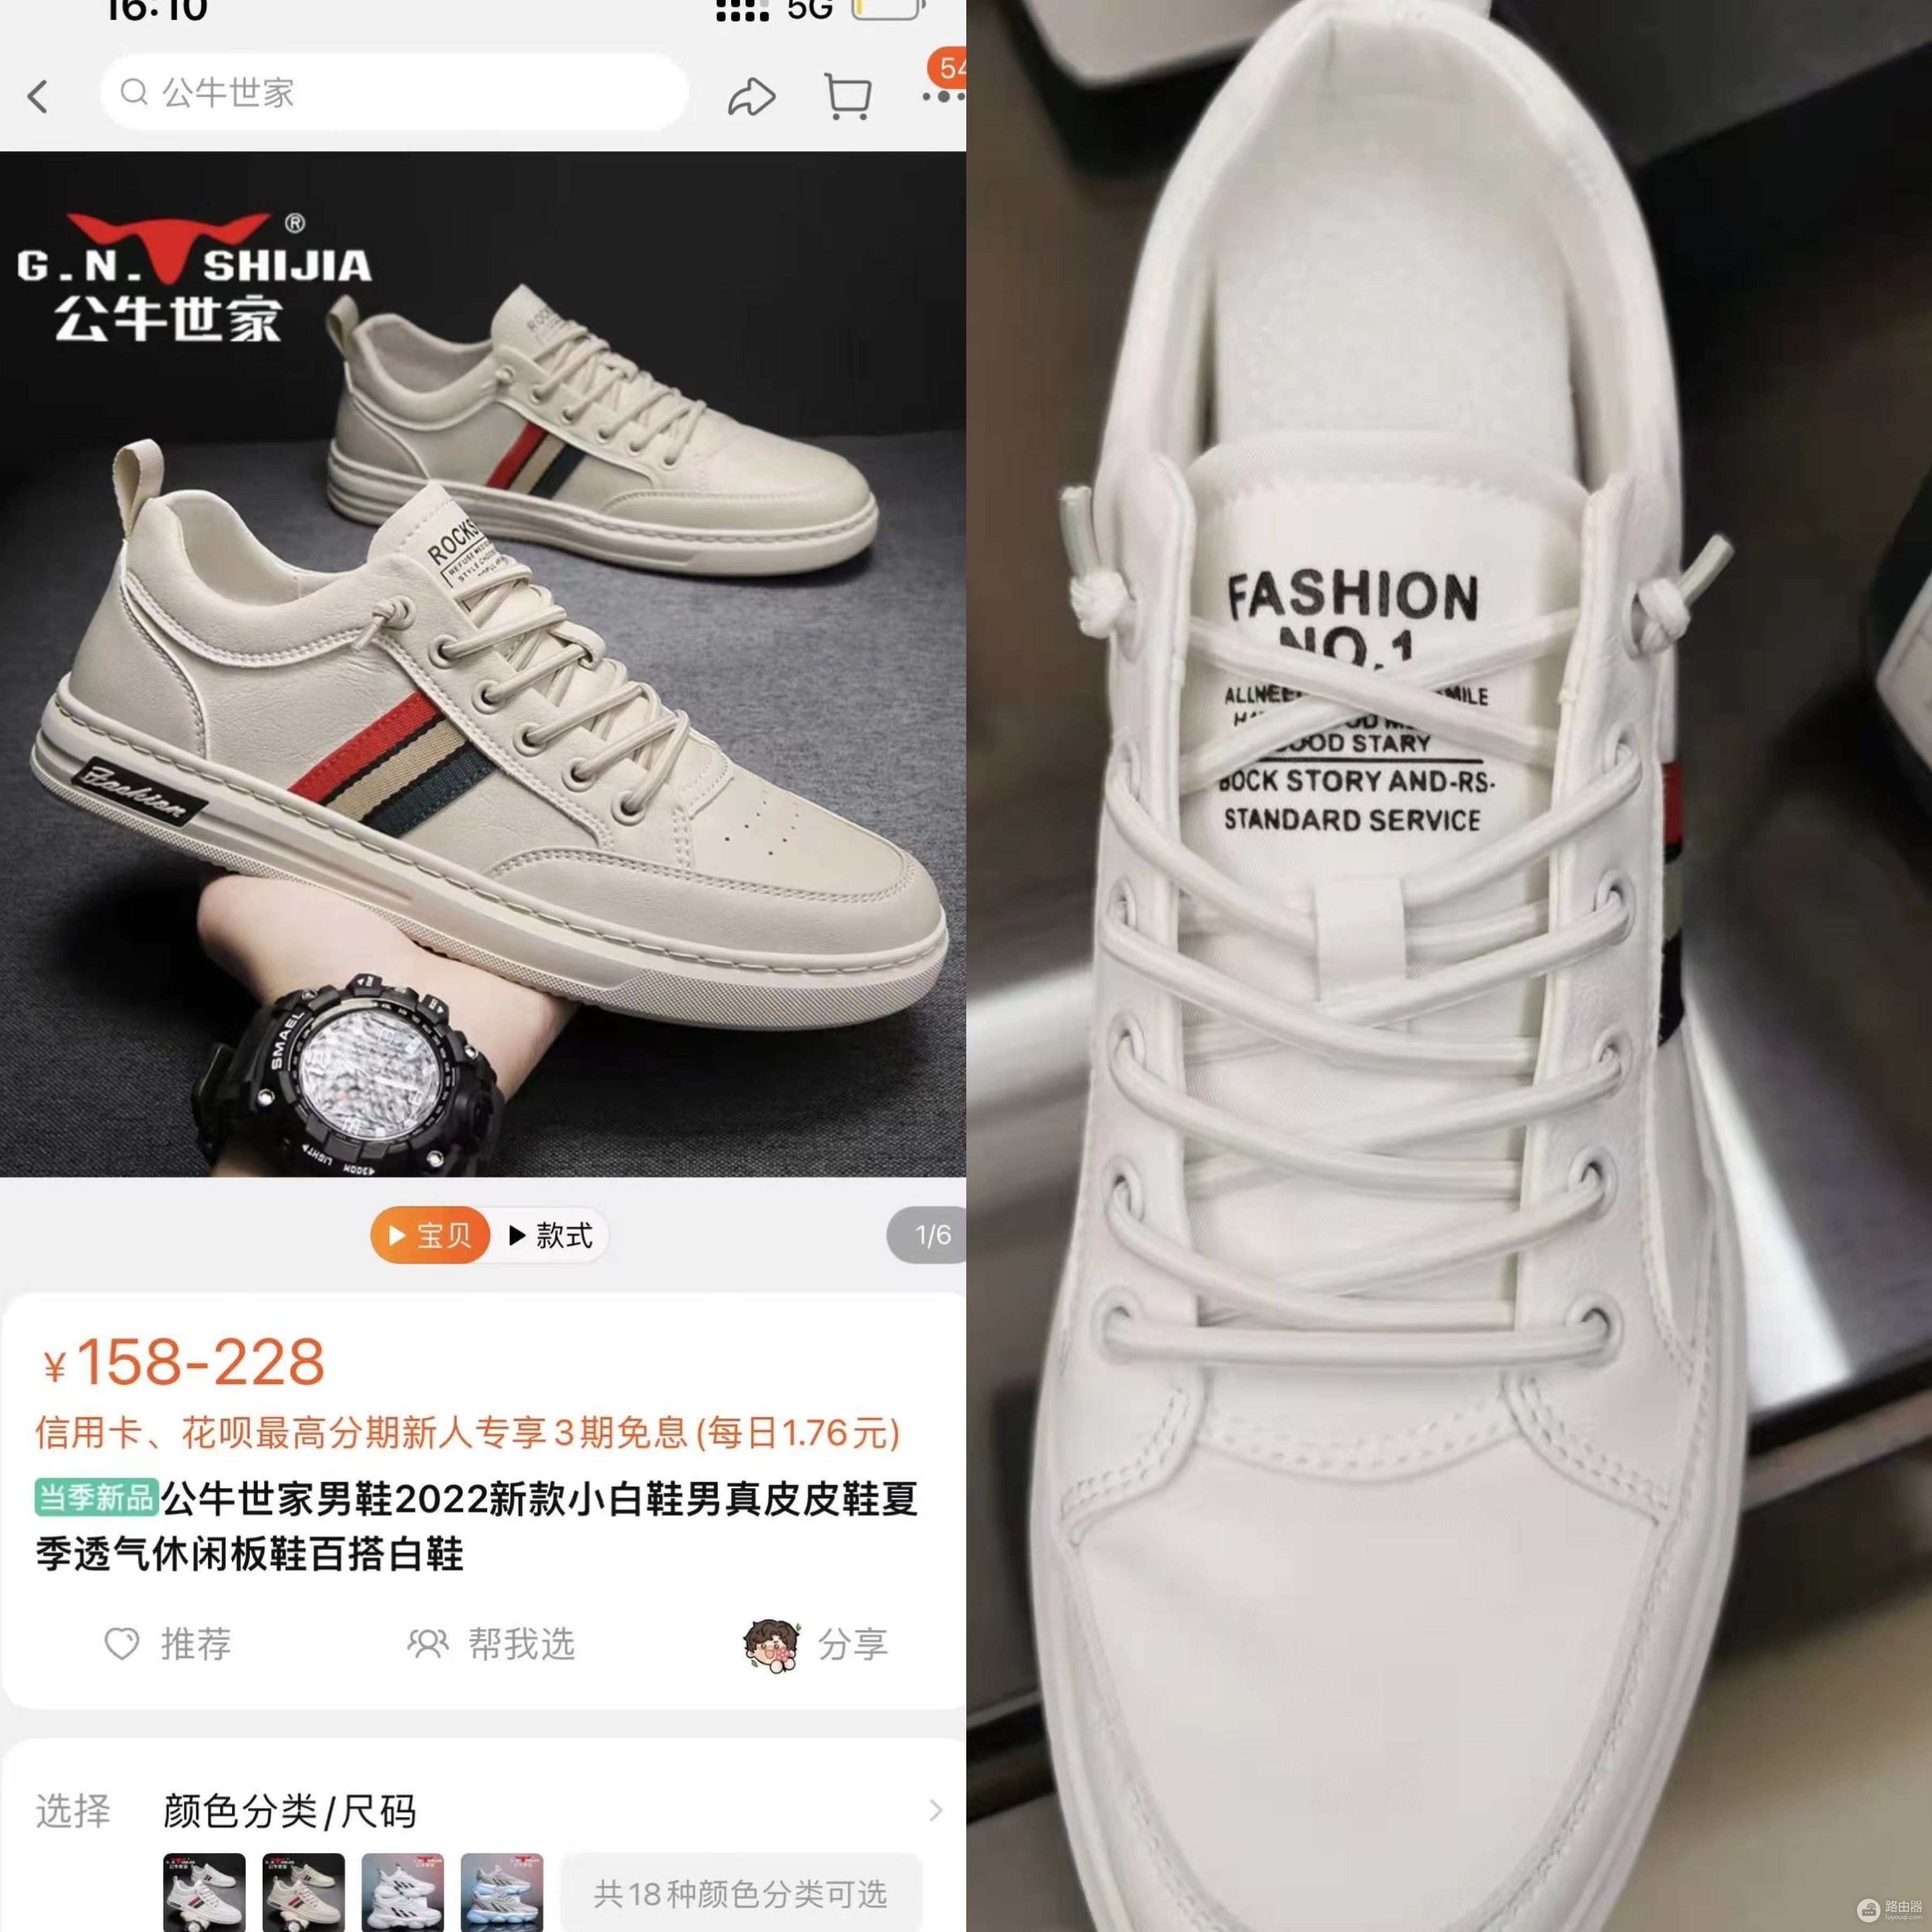 618维权丨淘宝一网店被投诉挂名牌卖仿鞋，平台称正核实处理